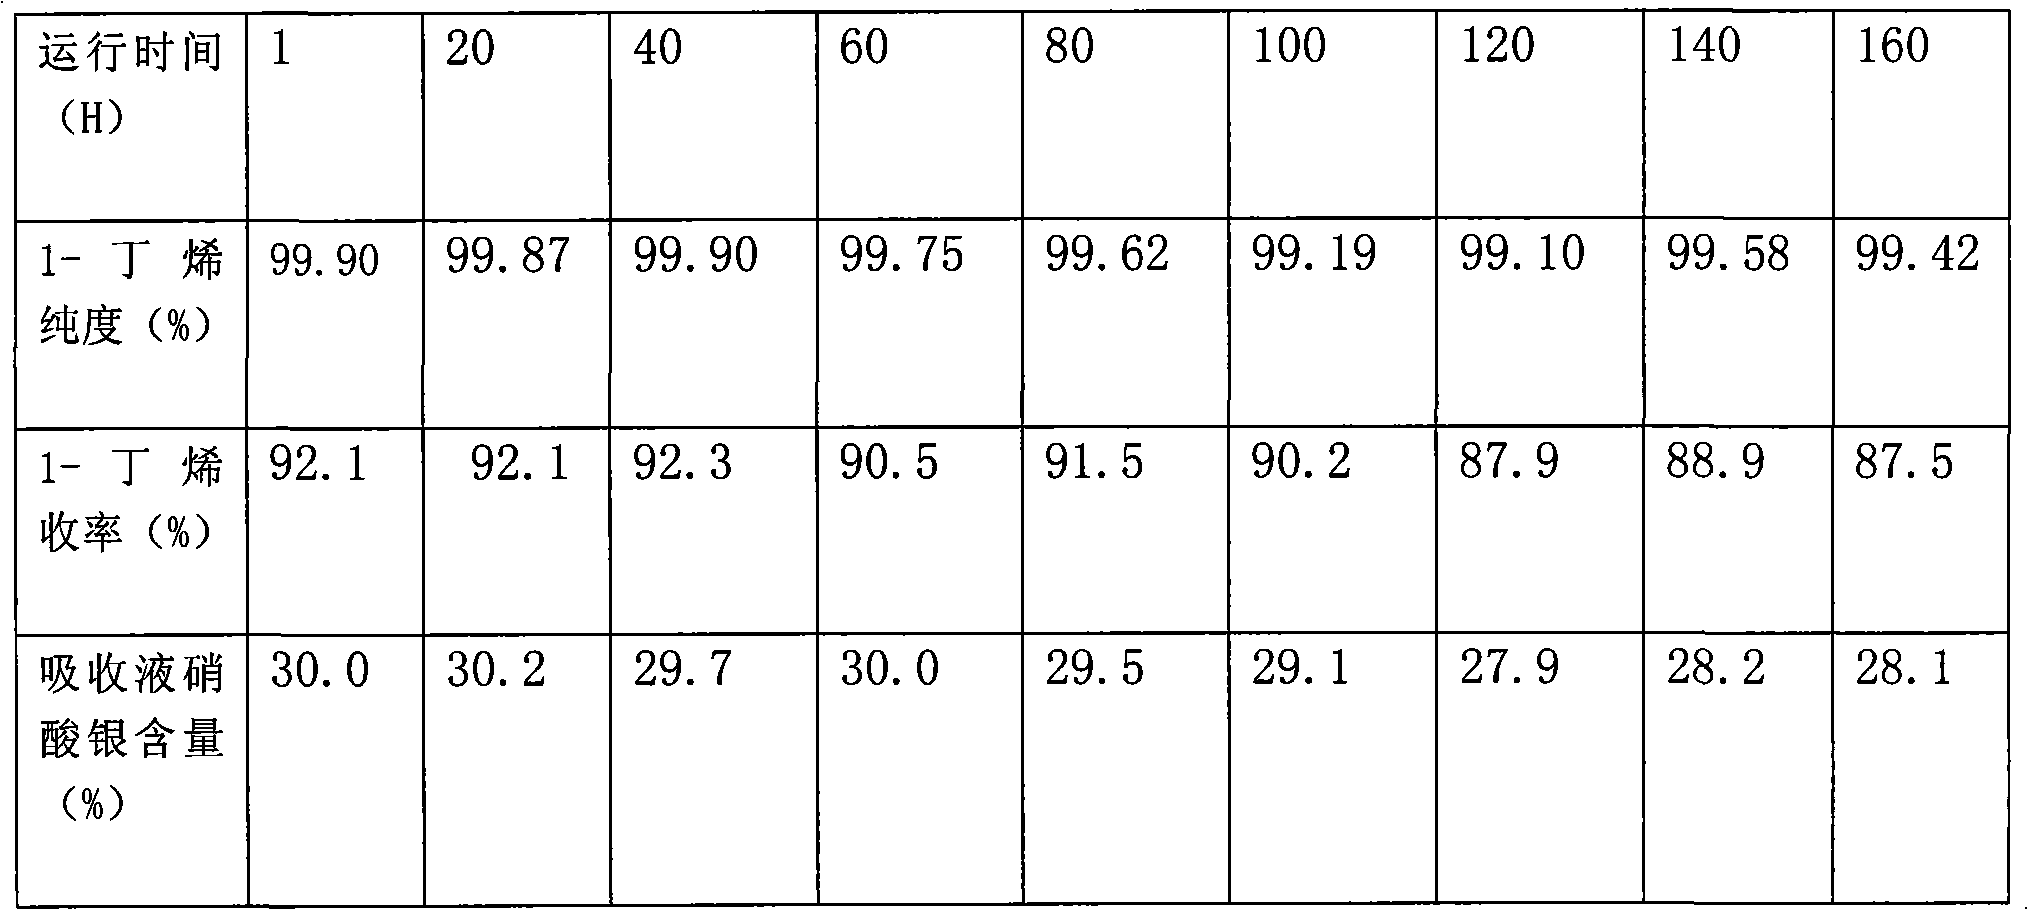 Method for separating 1-butylene